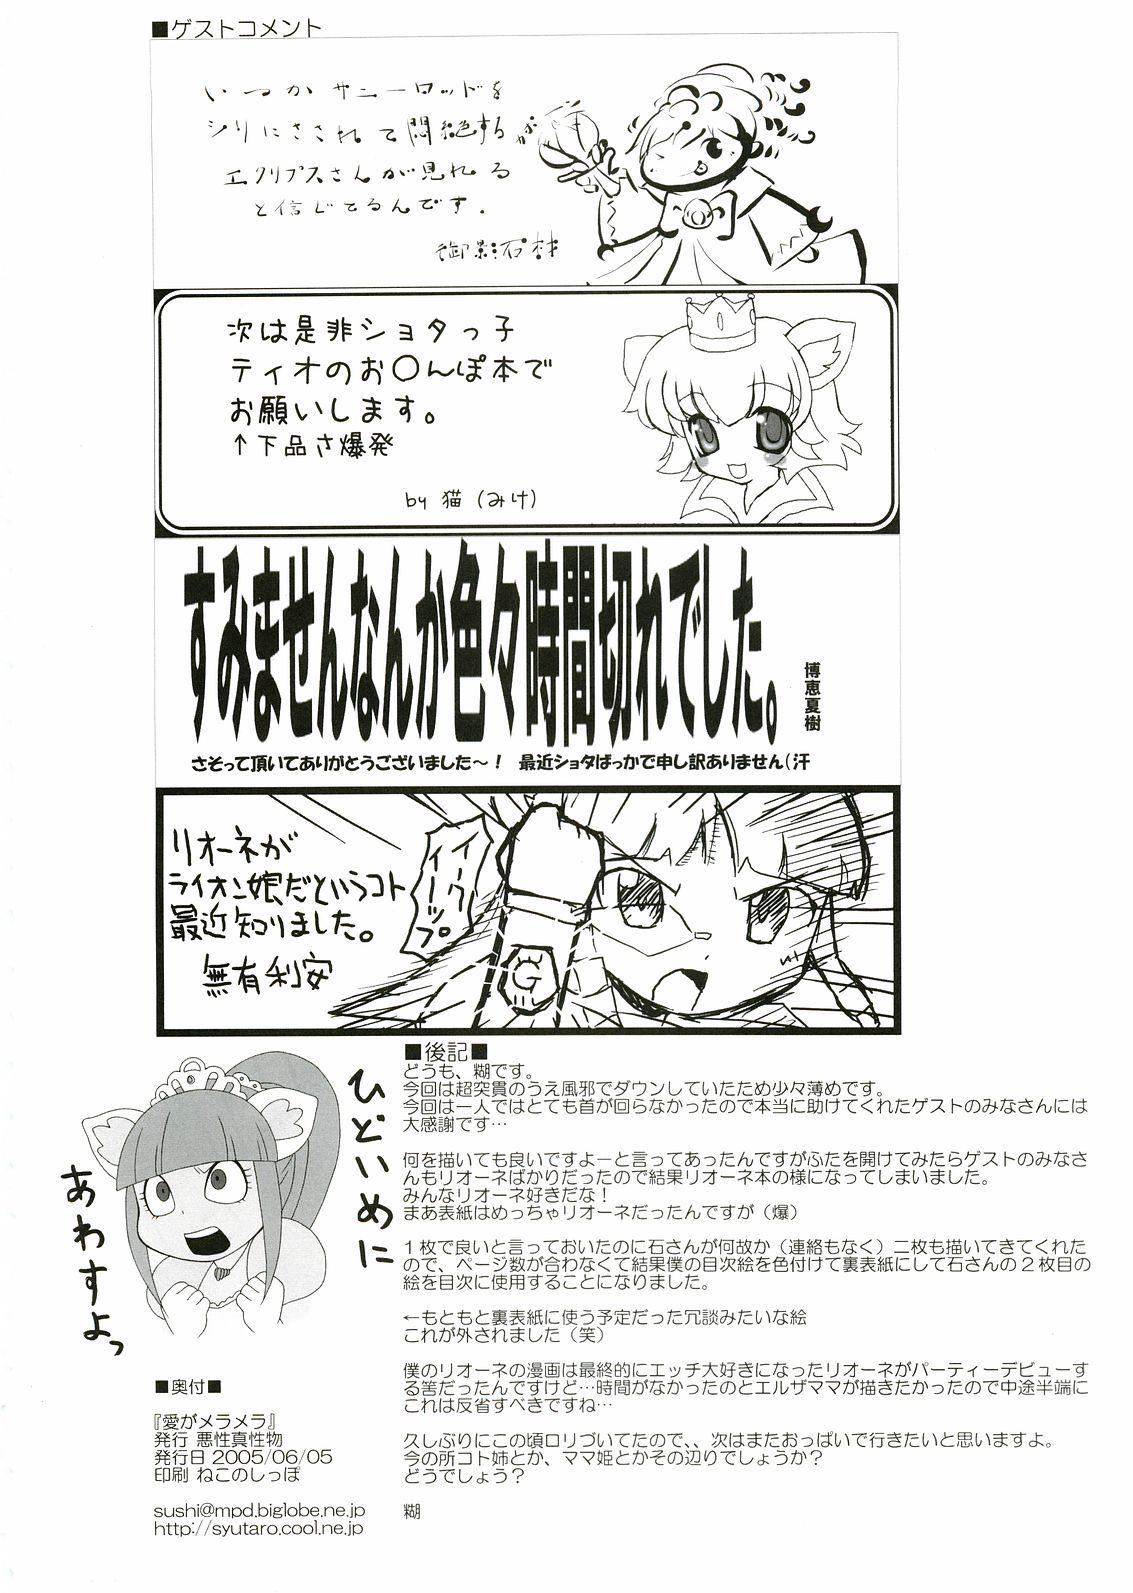 Tetas Ai ga Meramera - Fushigiboshi no futagohime Inked - Page 17